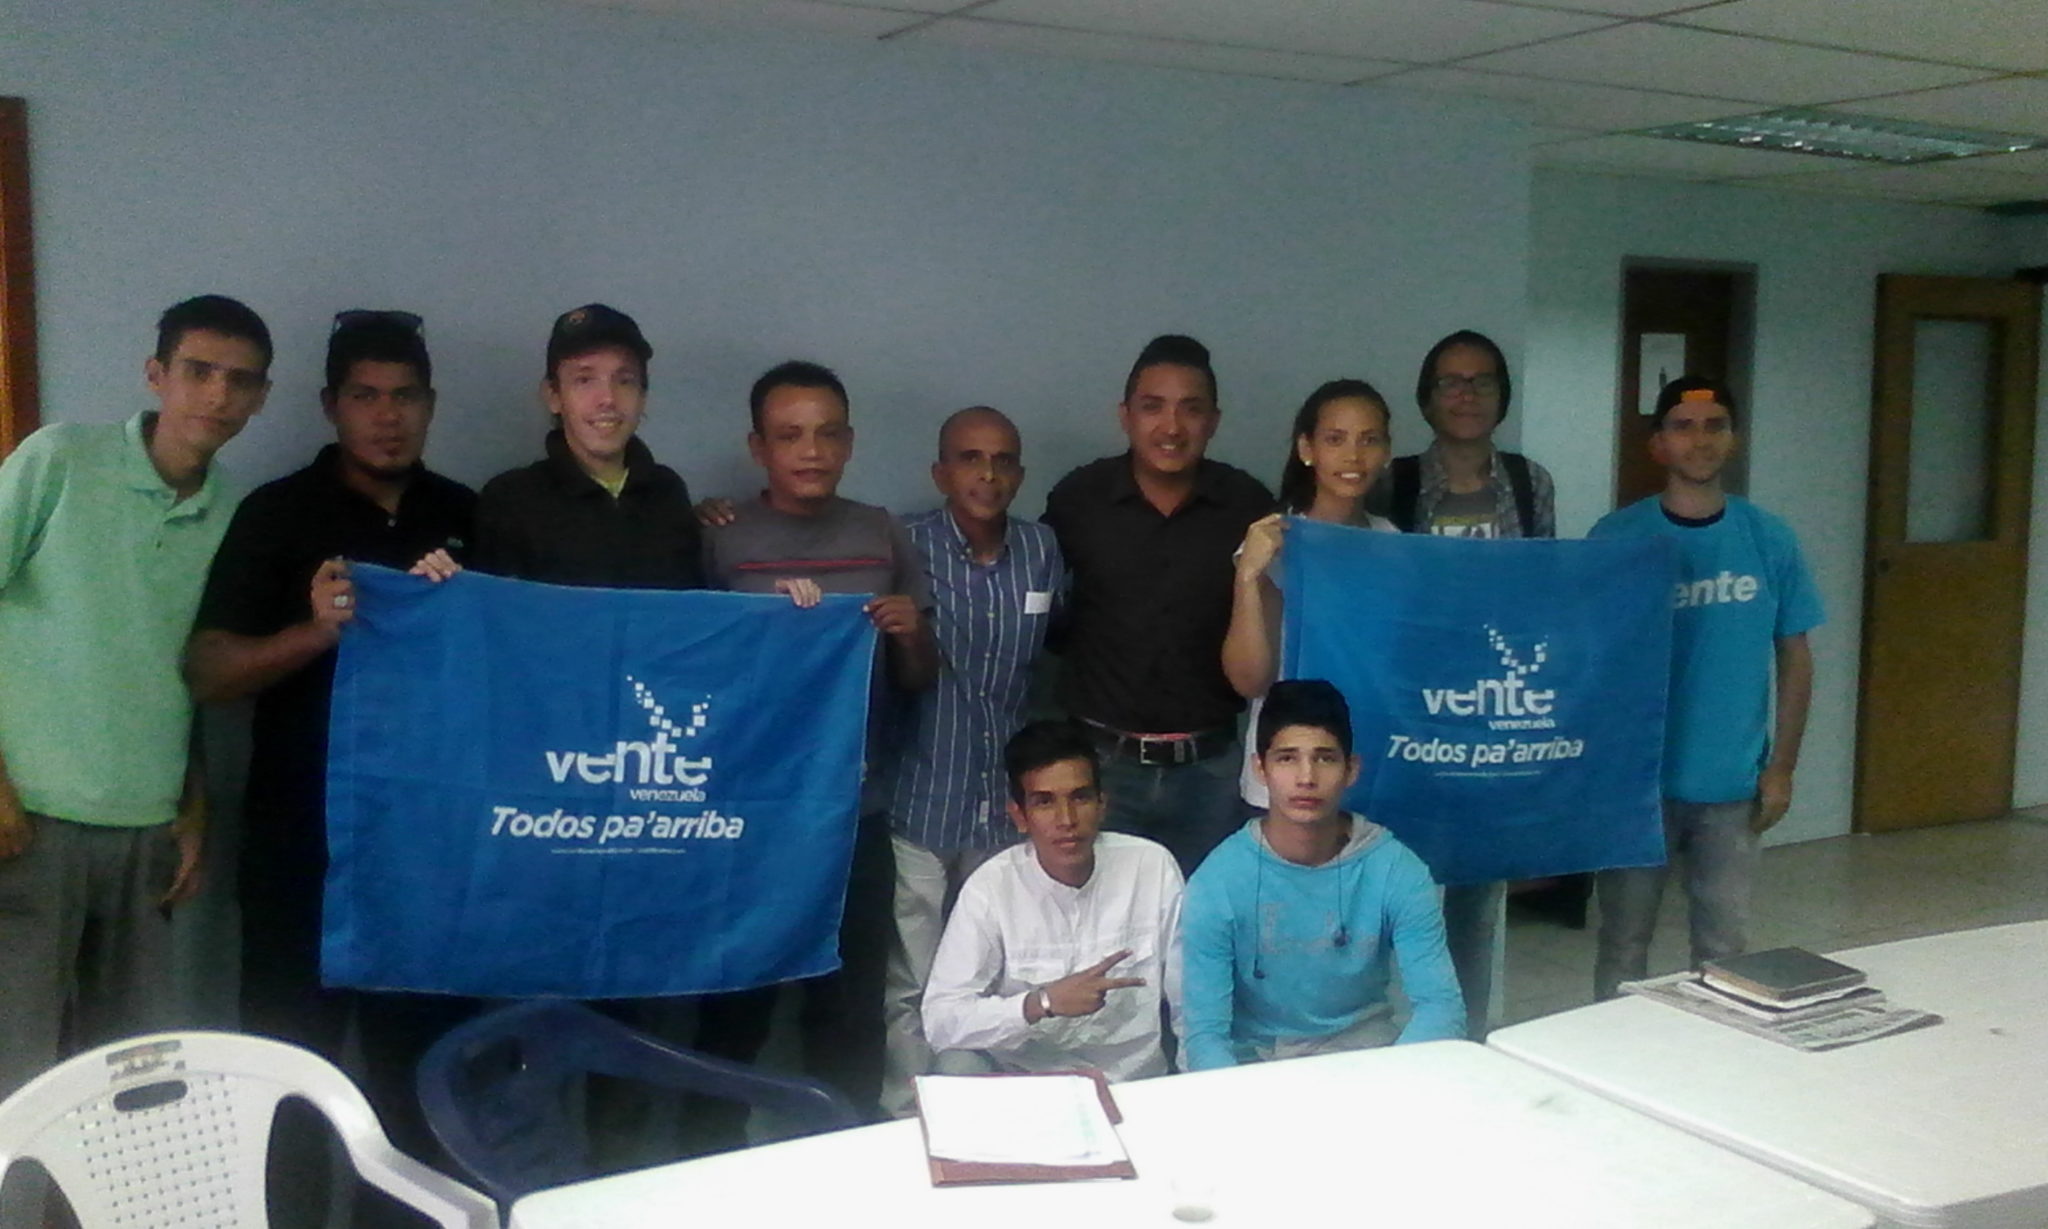 Vente Venezuela juramenta equipo promotor en Trujillo